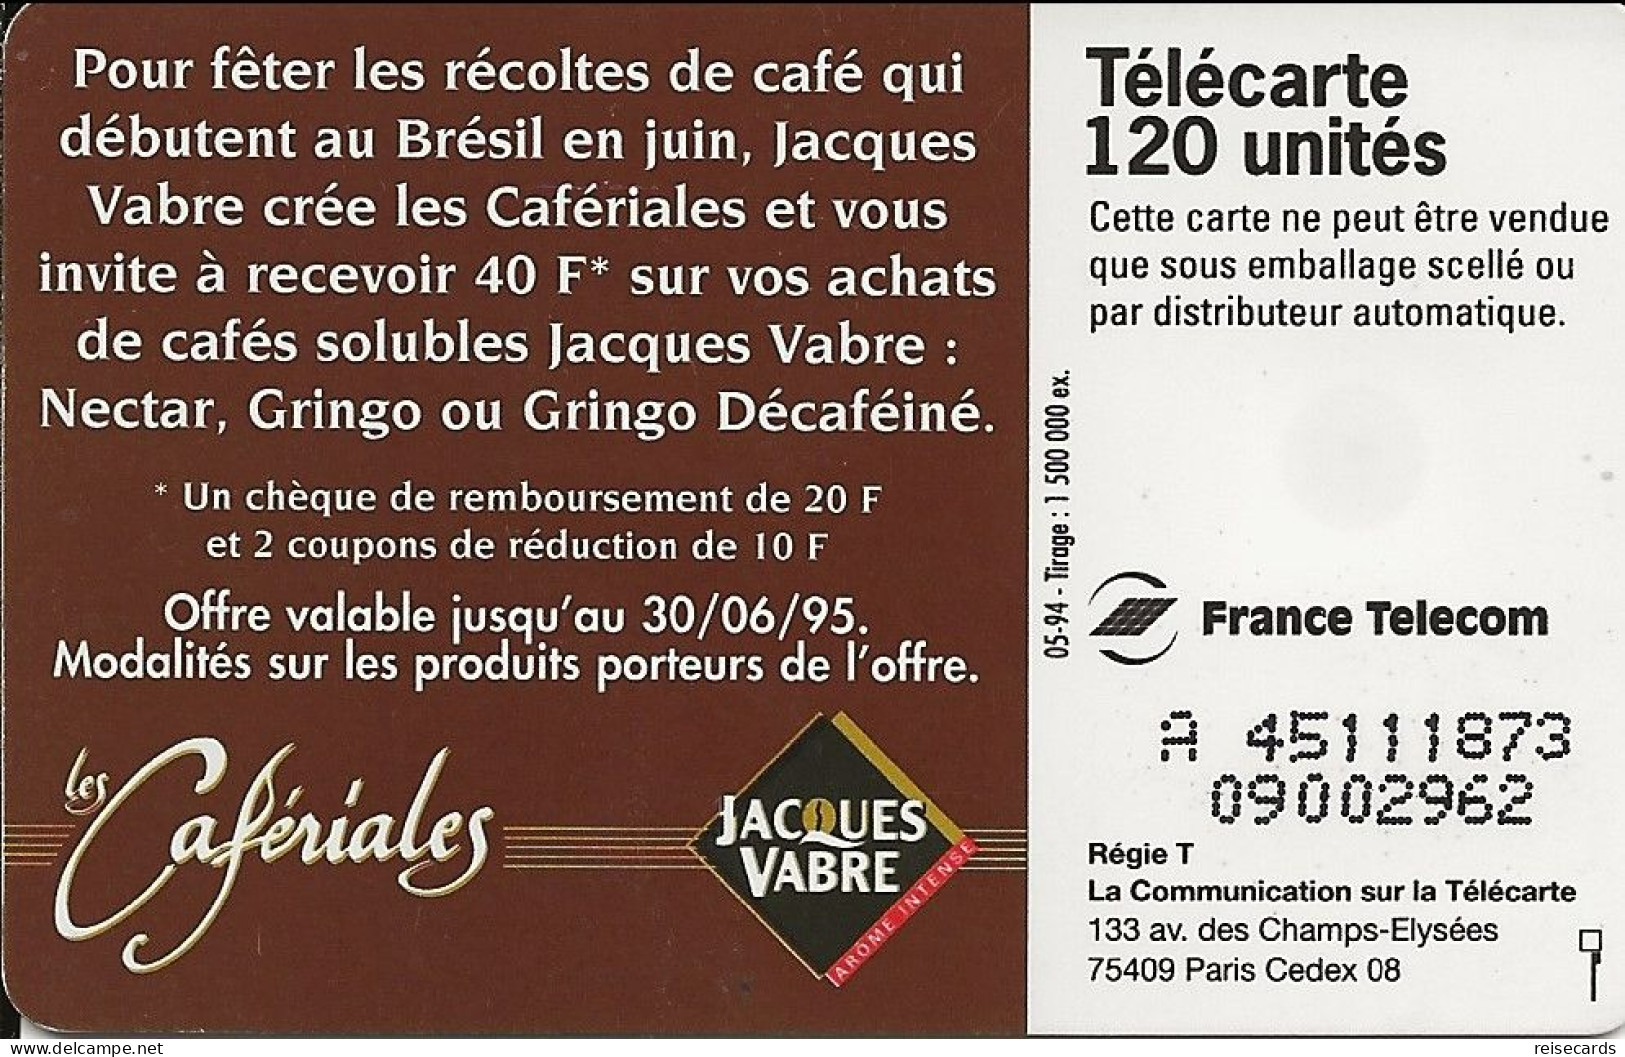 France: France Telecom 05/94 F470a 970.1 Jacques Vabre, Cafériales - 1994